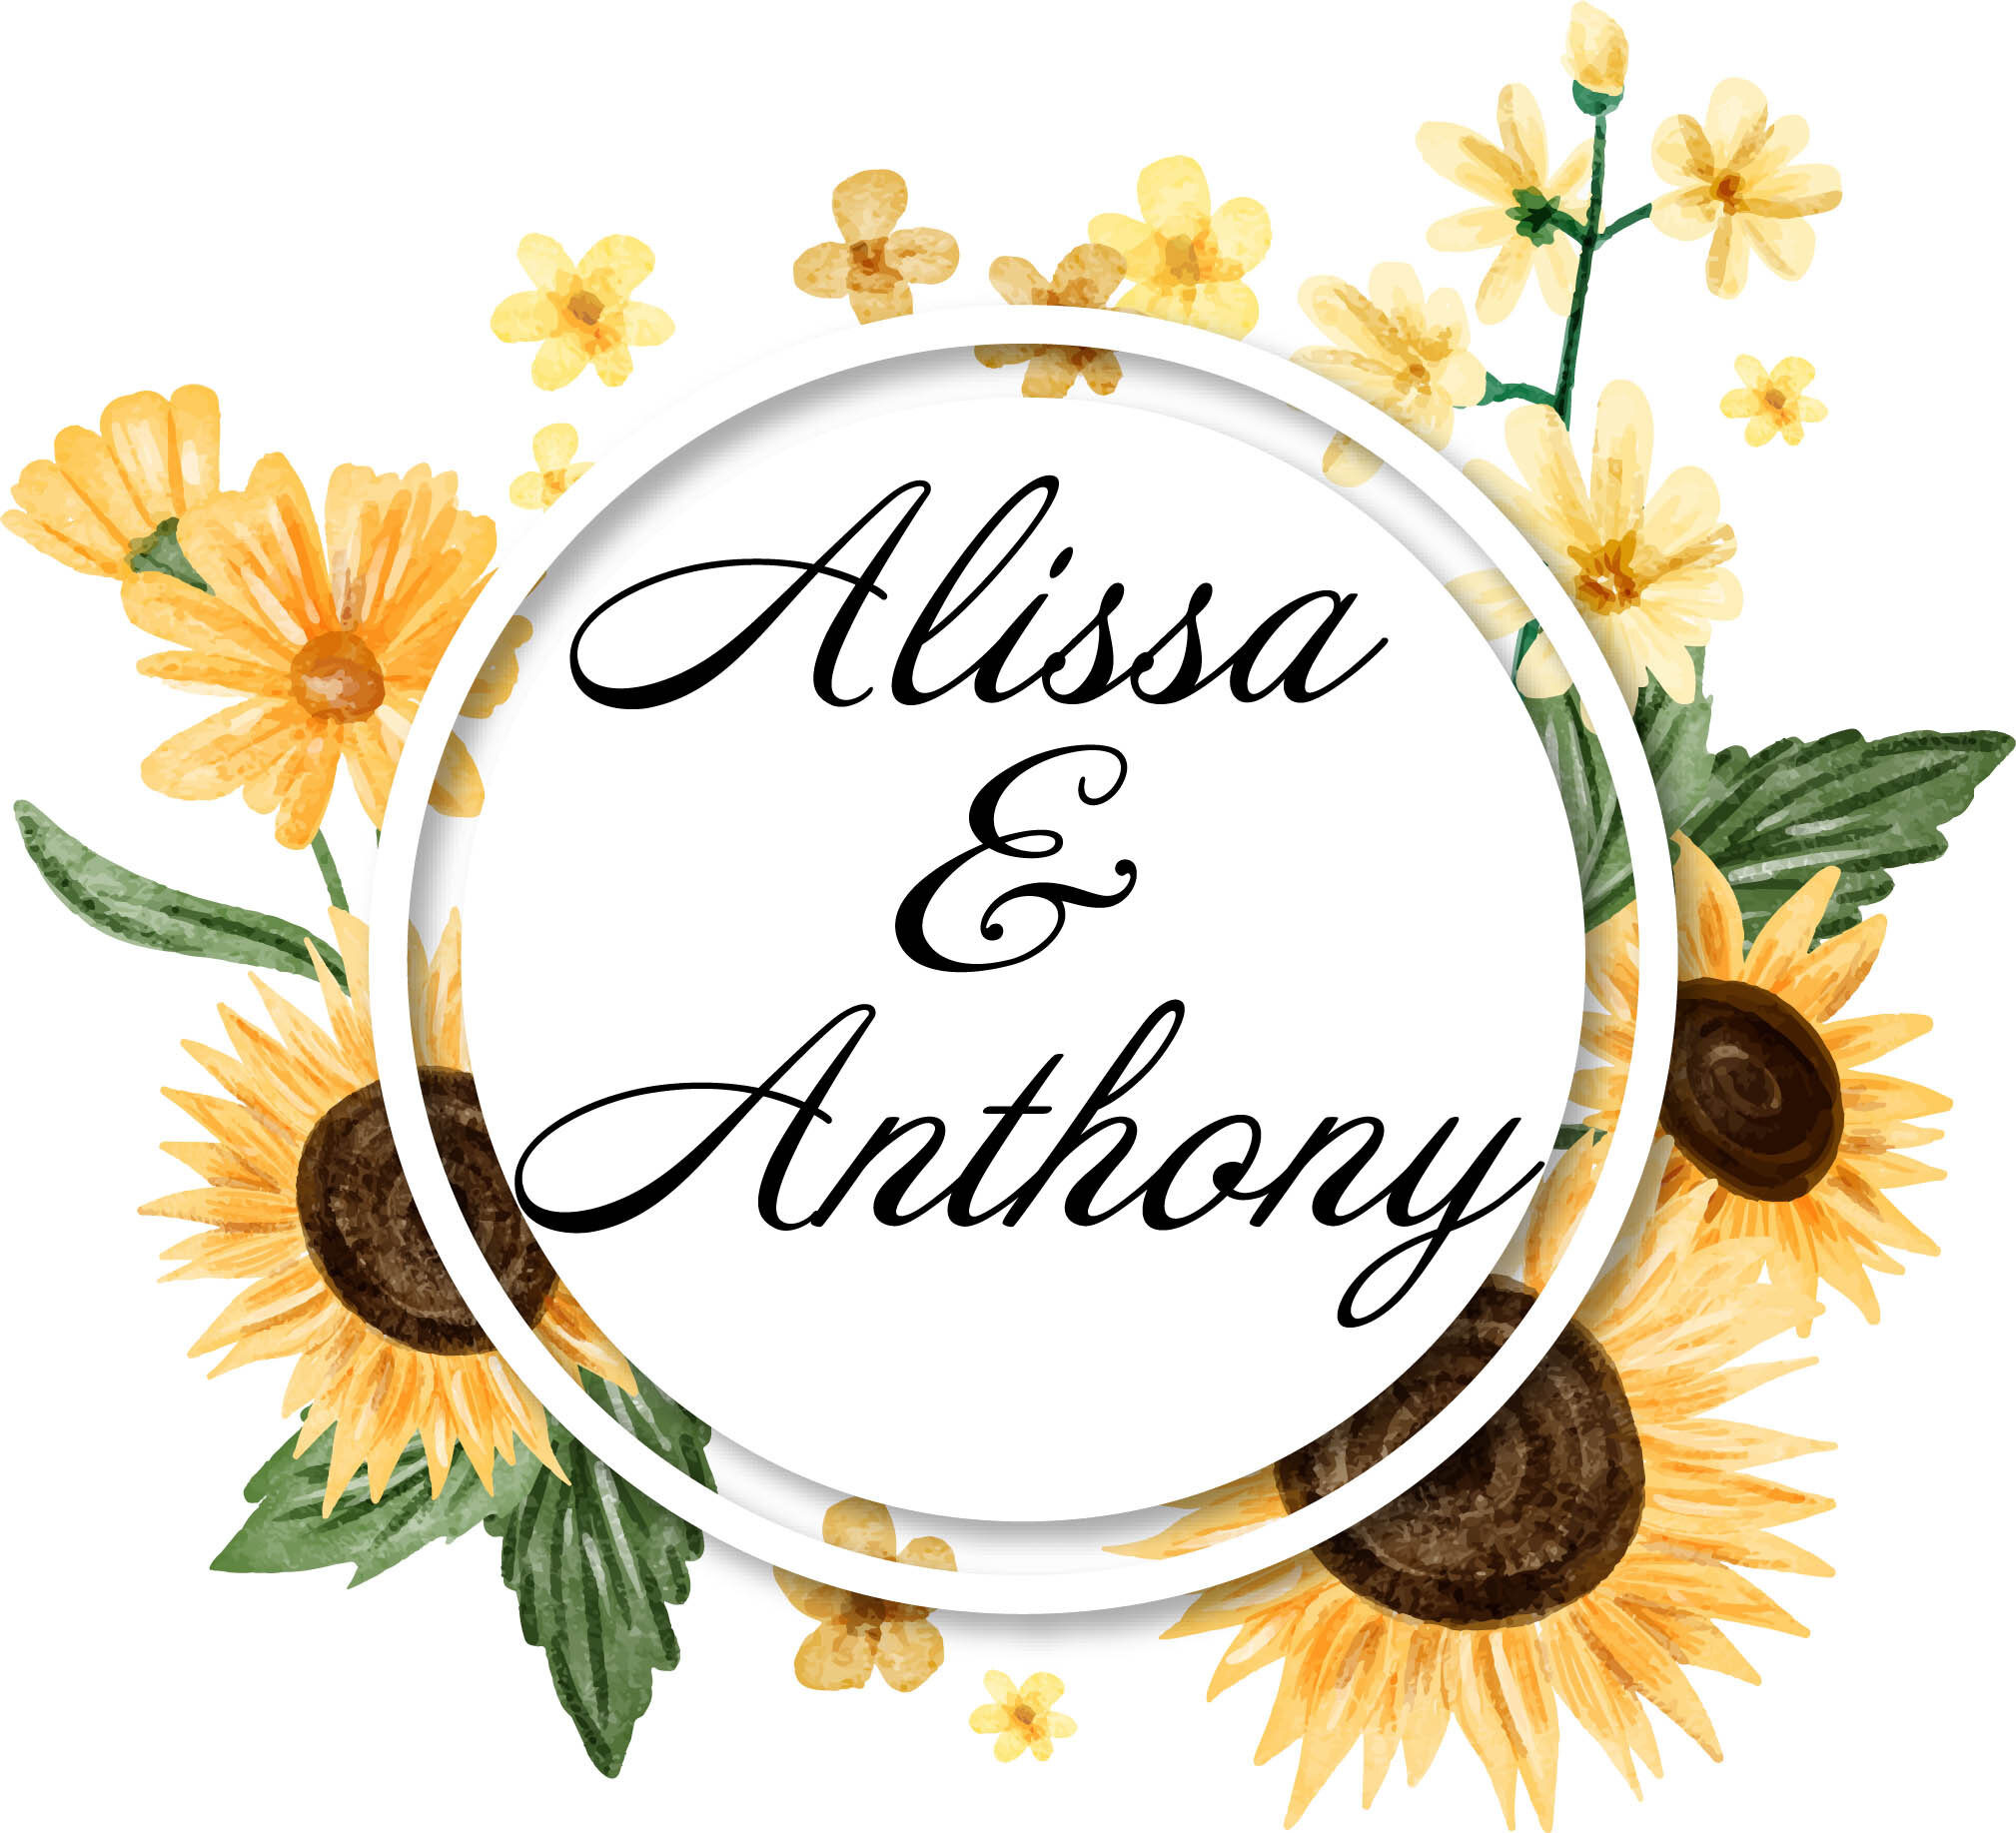 Alissa &amp; Tony's Monogram